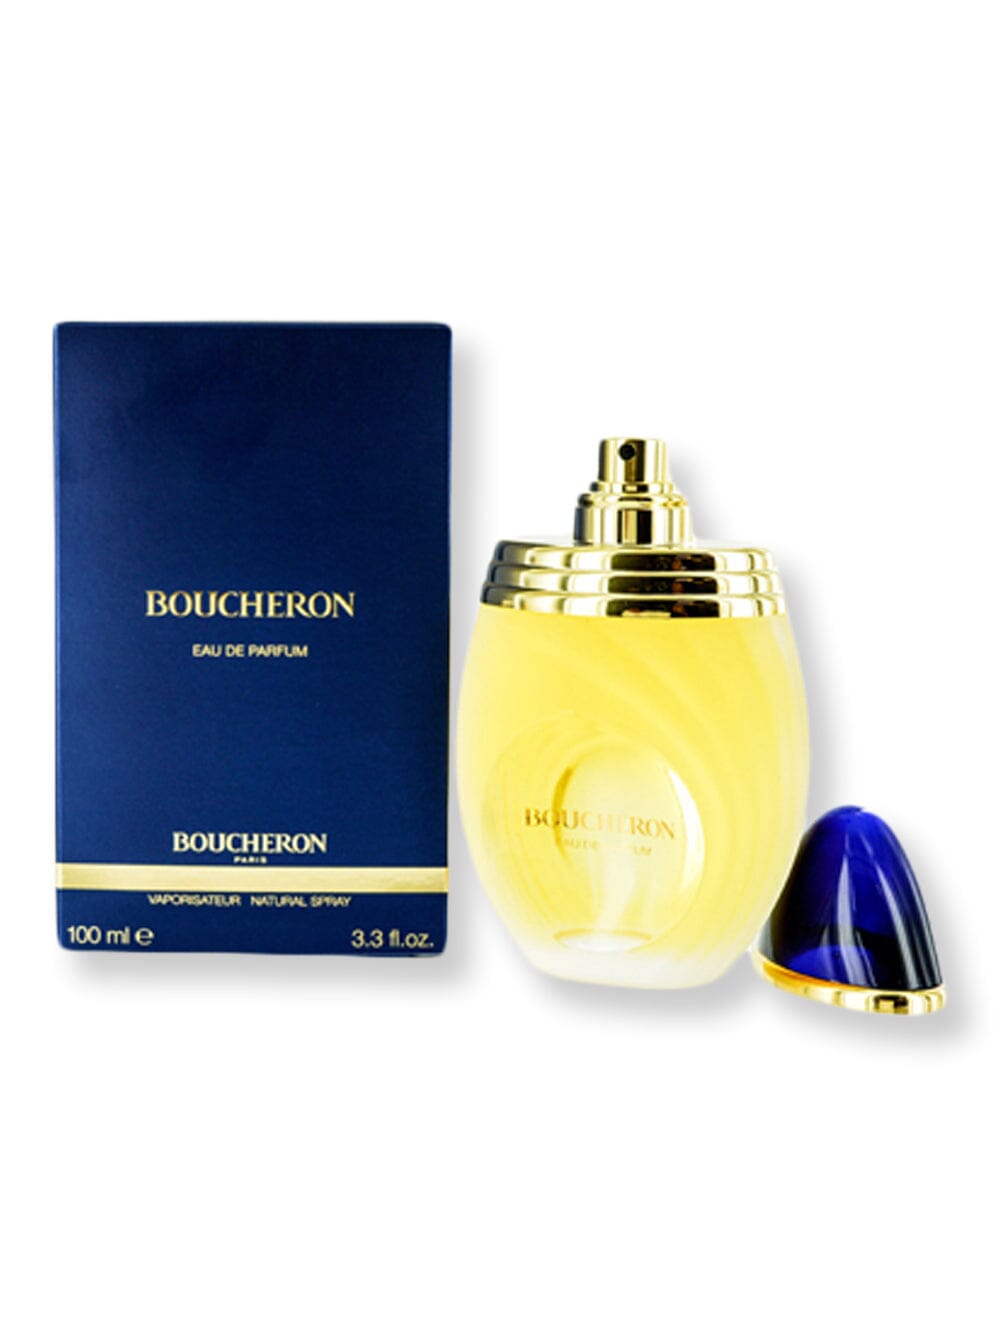 Boucheron Boucheron EDP Spray 3.3 oz Perfume 